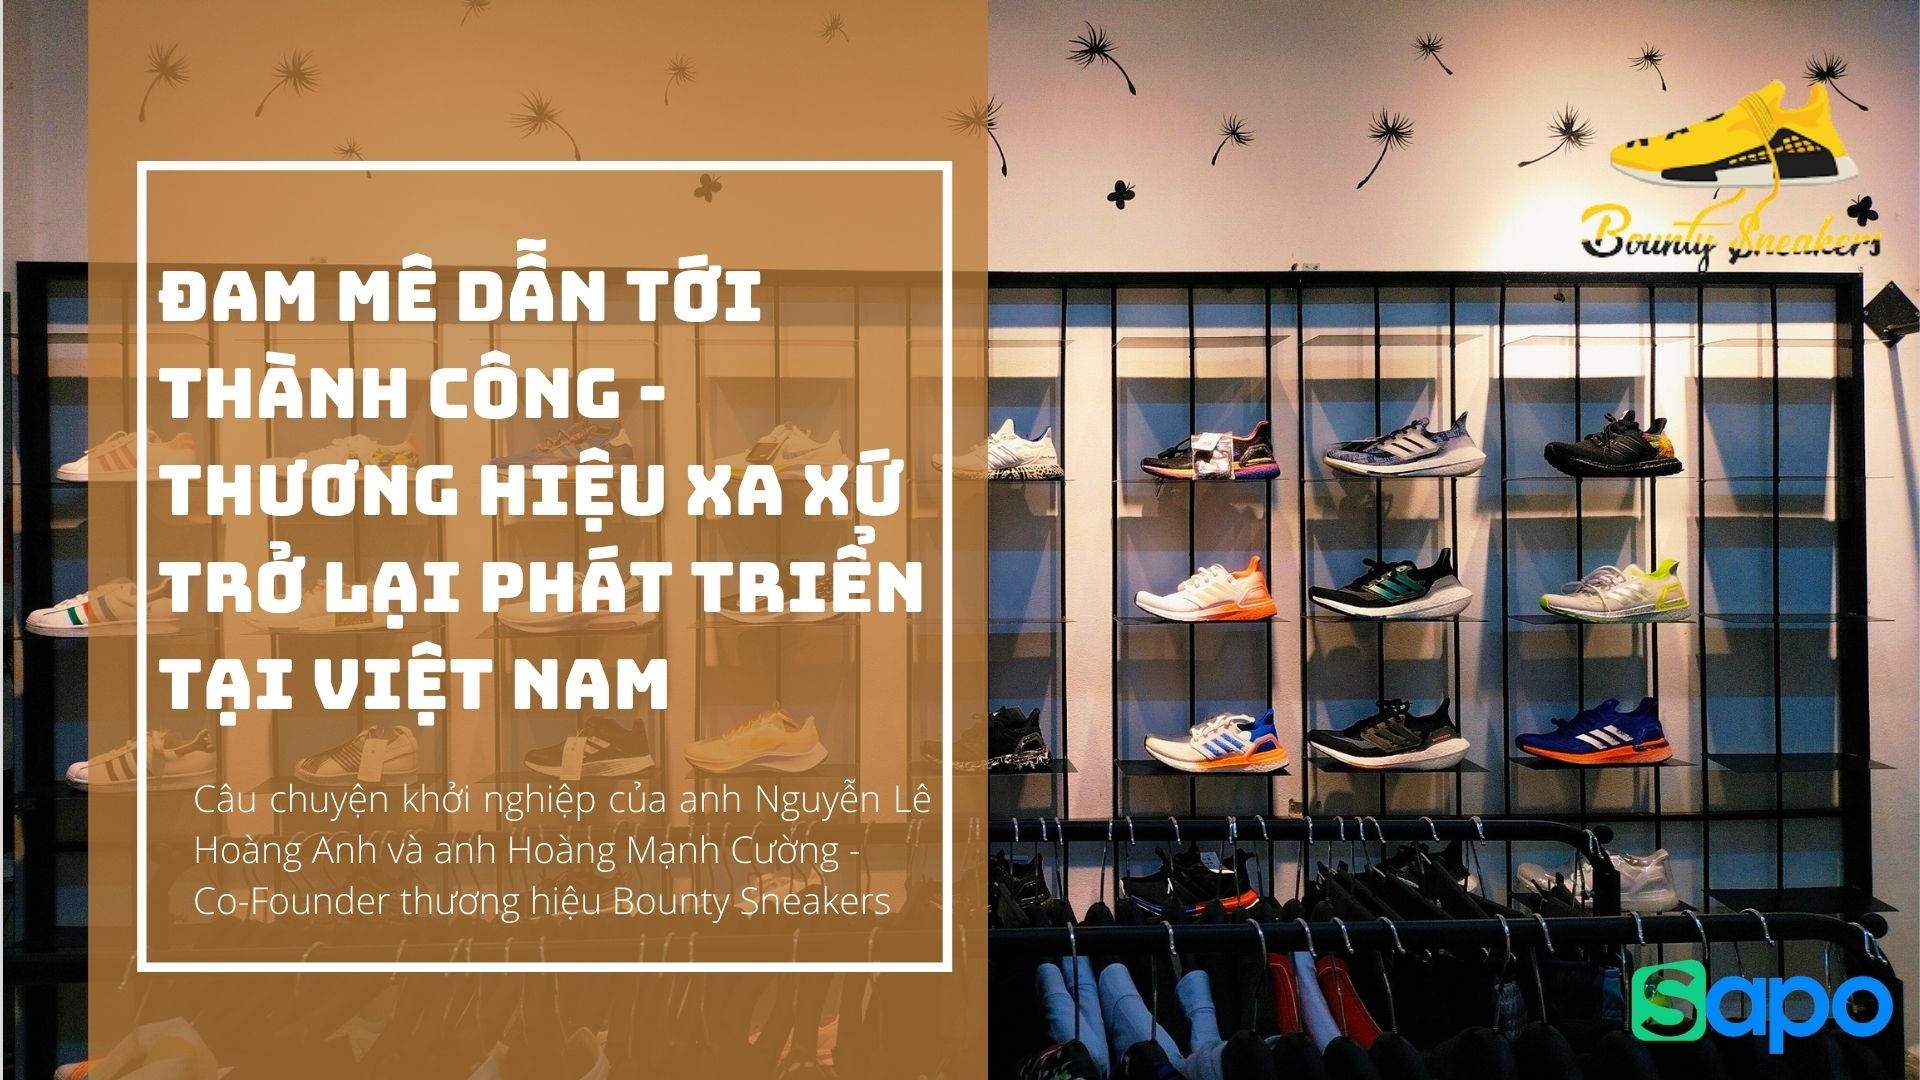 Đam mê dẫn tới thành công - Thương hiệu xa xứ trở lại phát triển tại Việt Nam